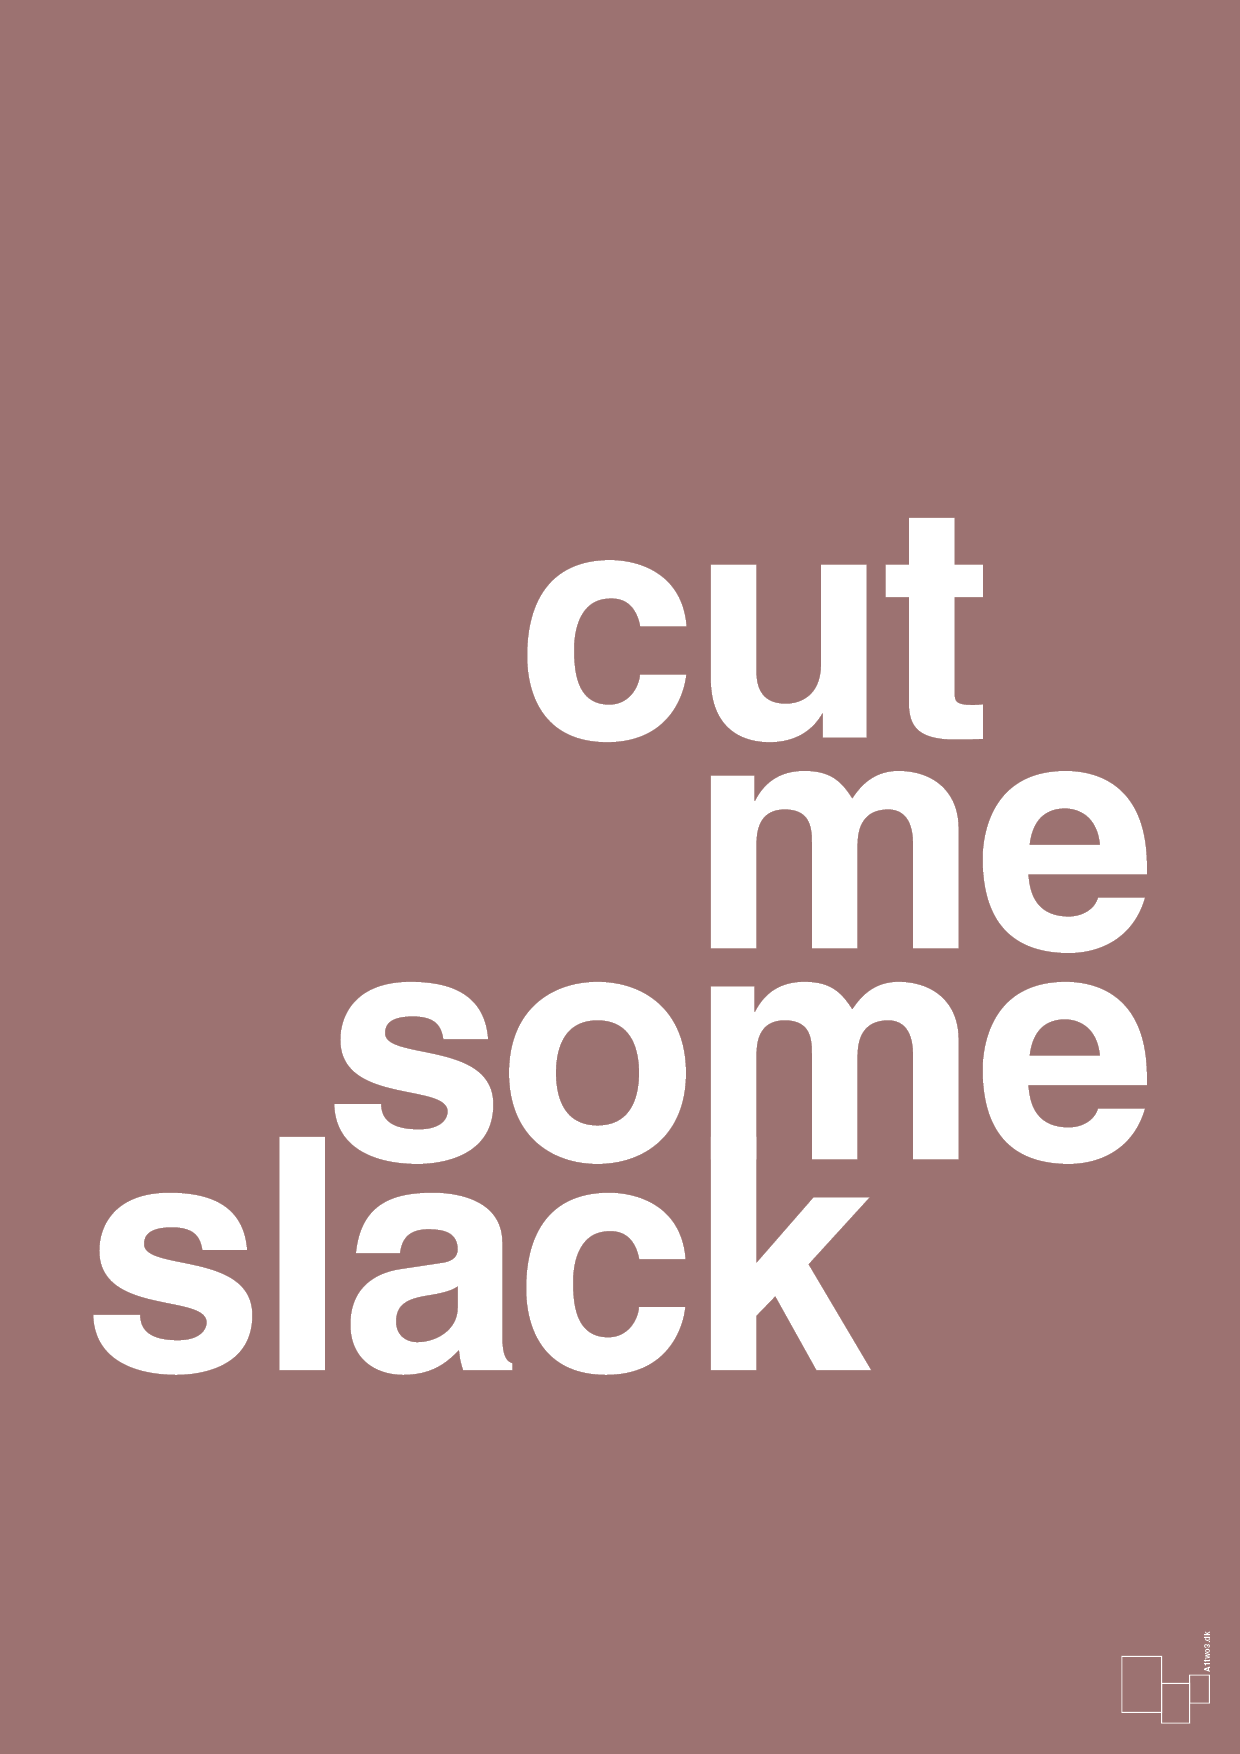 cut me some slack - Plakat med Ordsprog i Plum